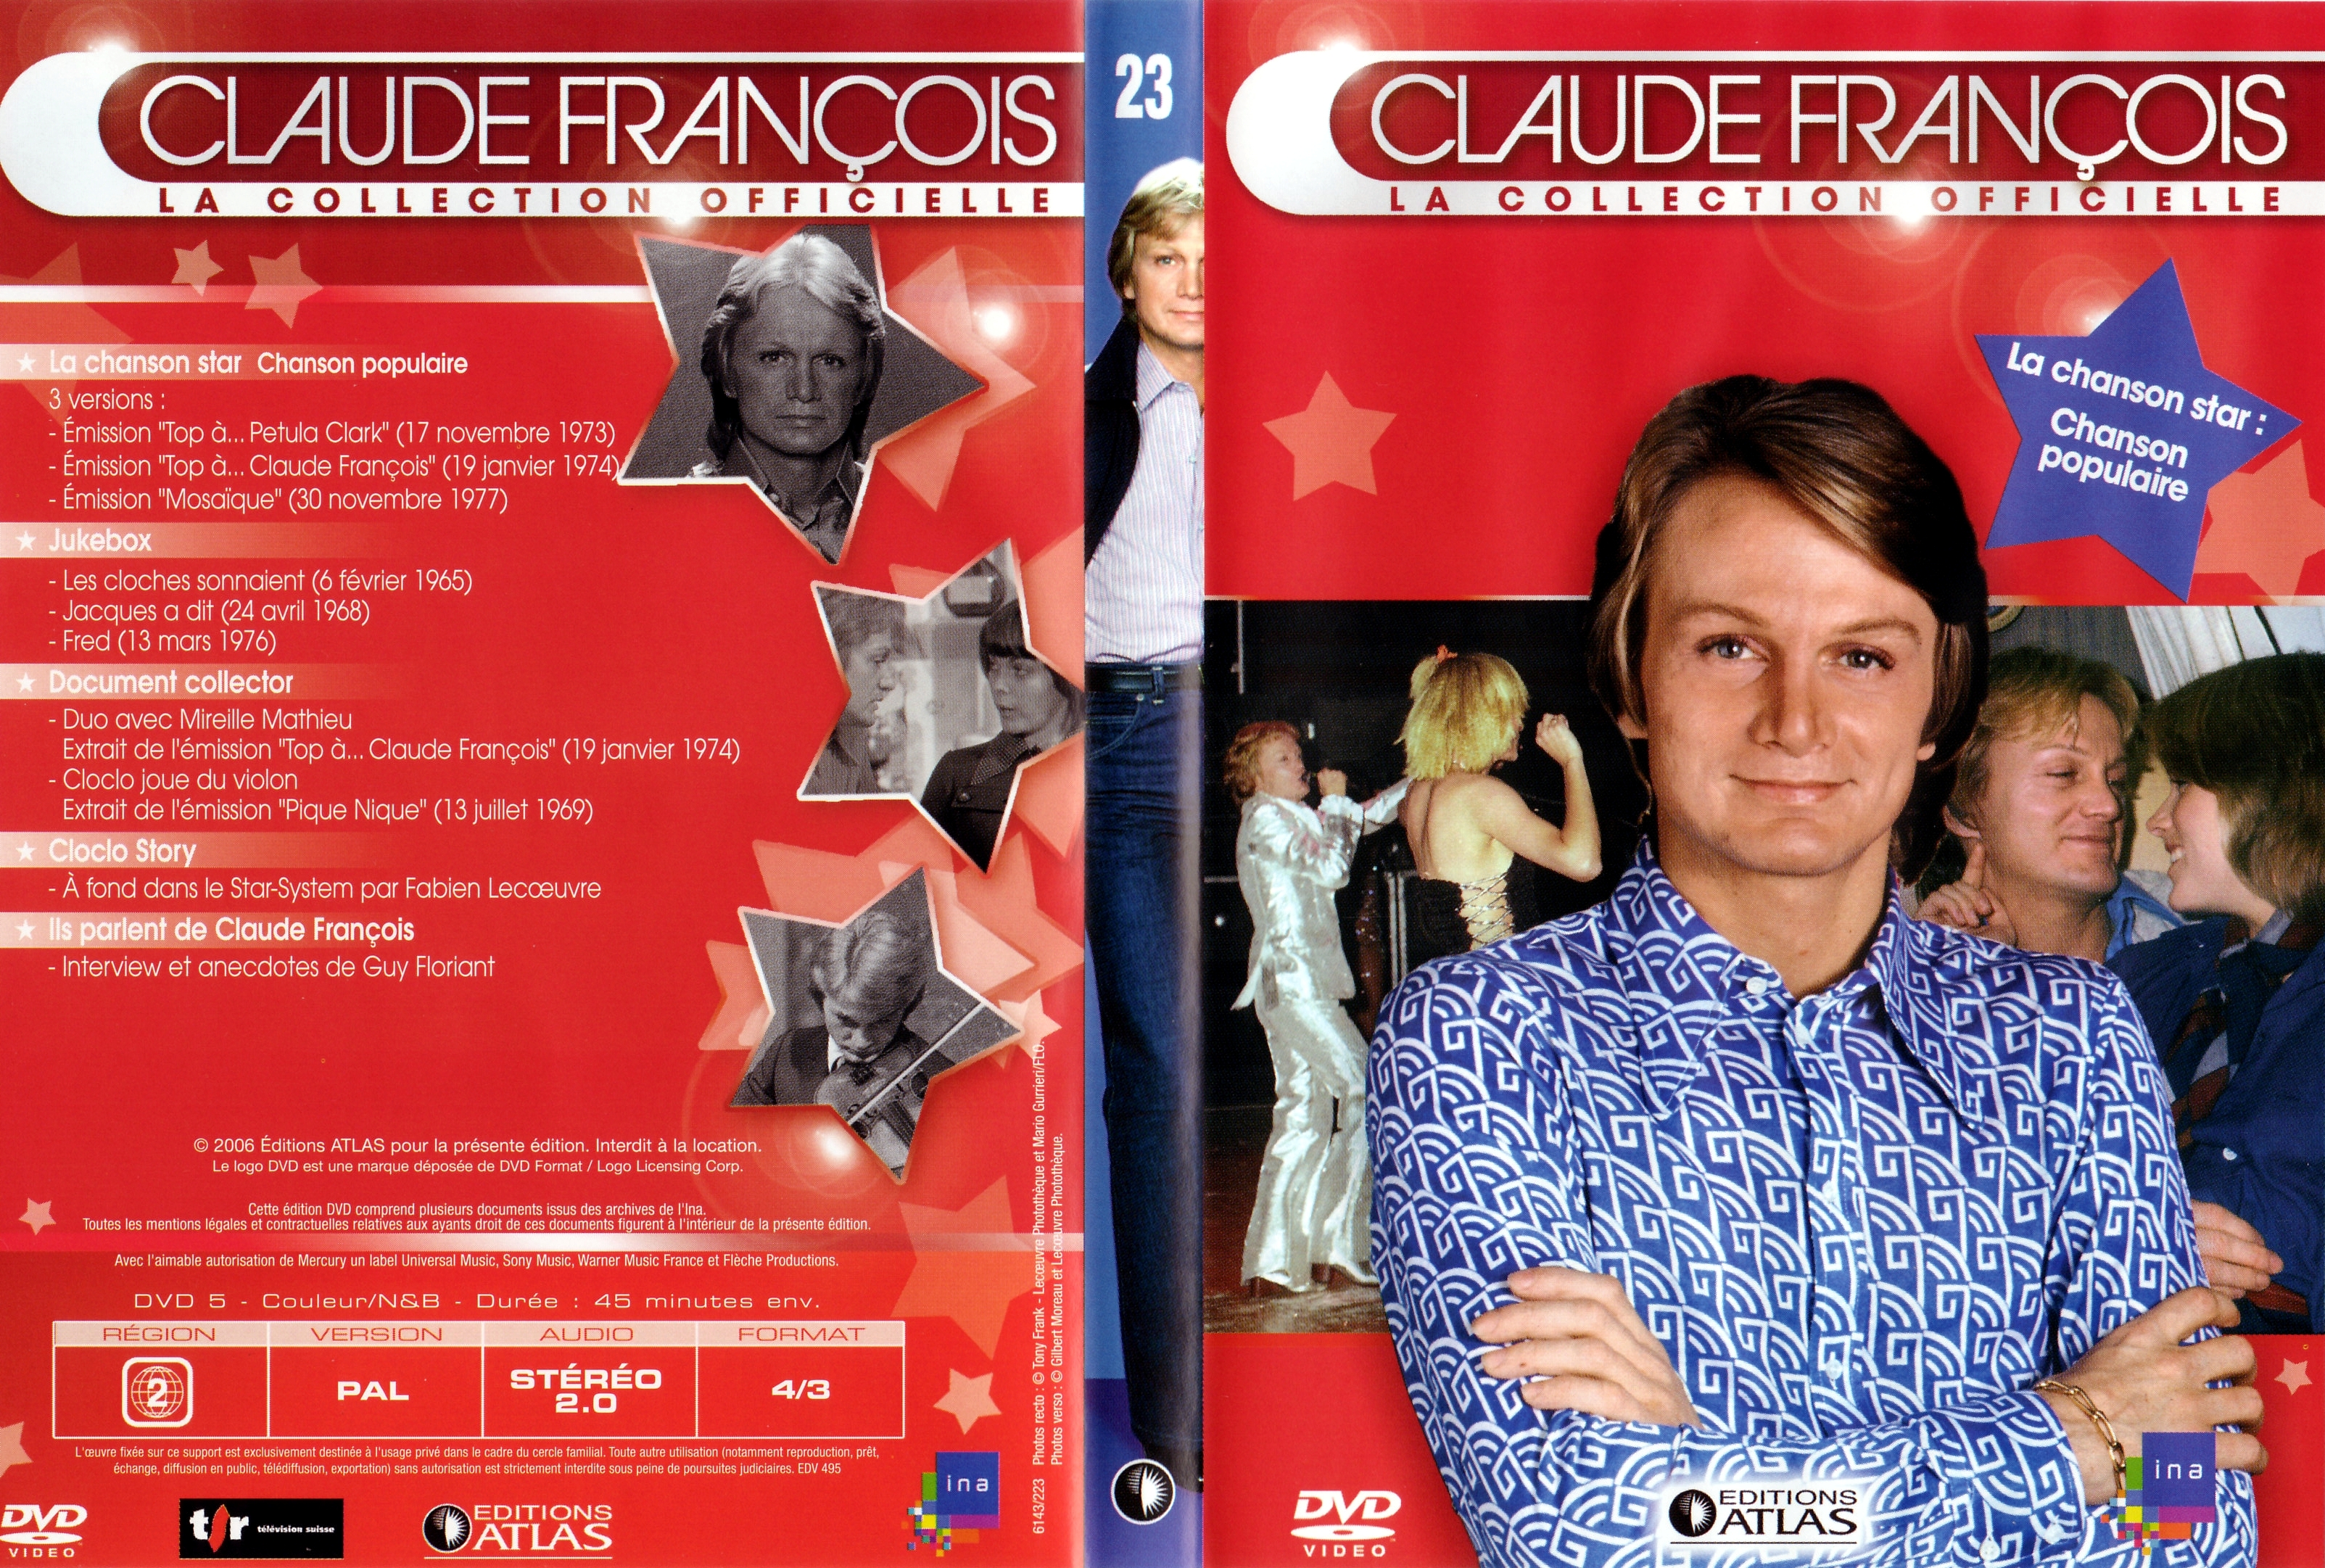 Jaquette DVD Claude Francois la collection officielle vol 23